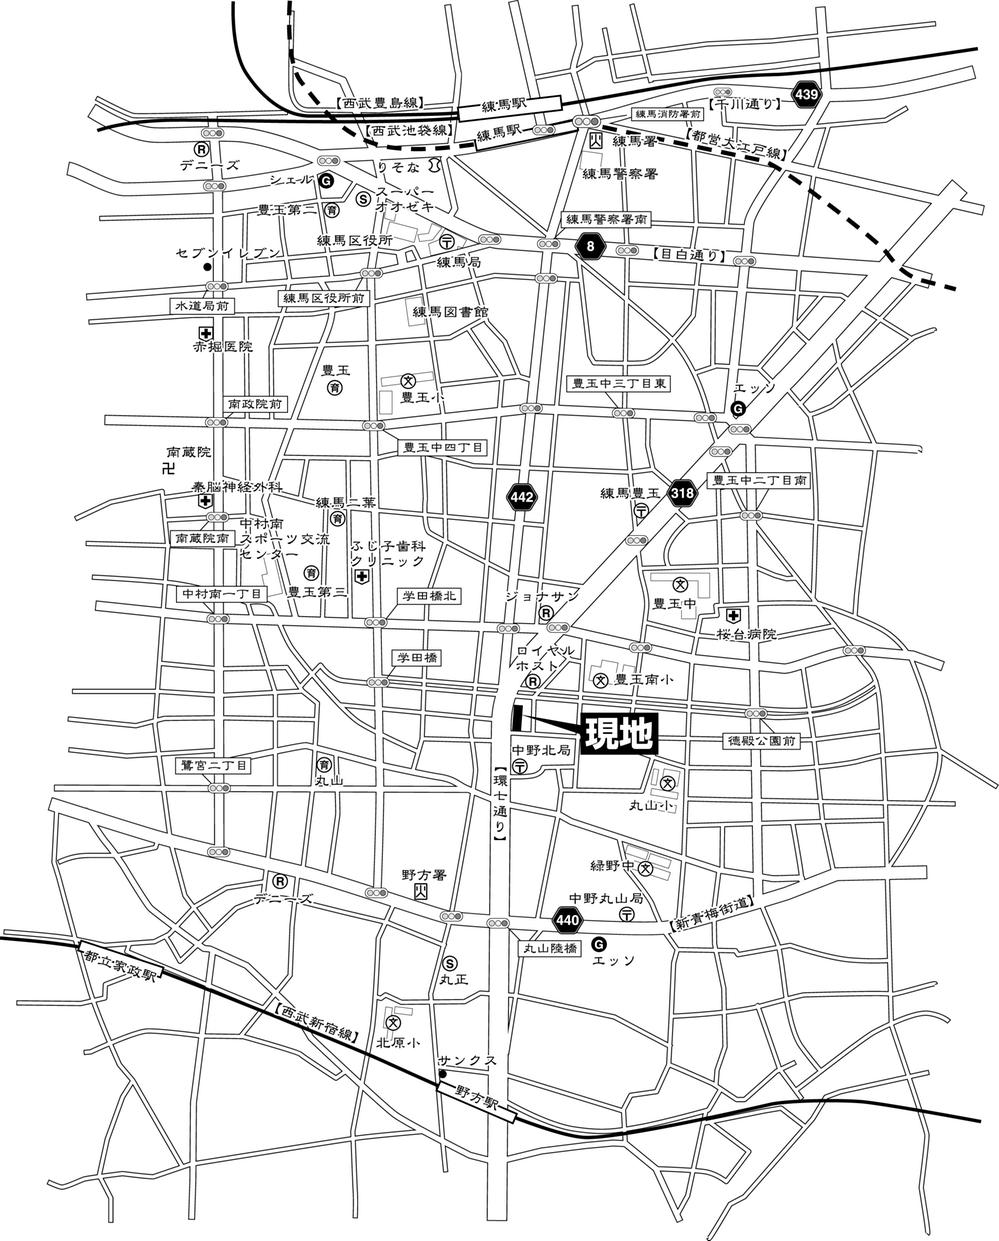 Local guide map. Nerima-ku, Tokyo Toyotamaminami 2-23-6 (residence display)